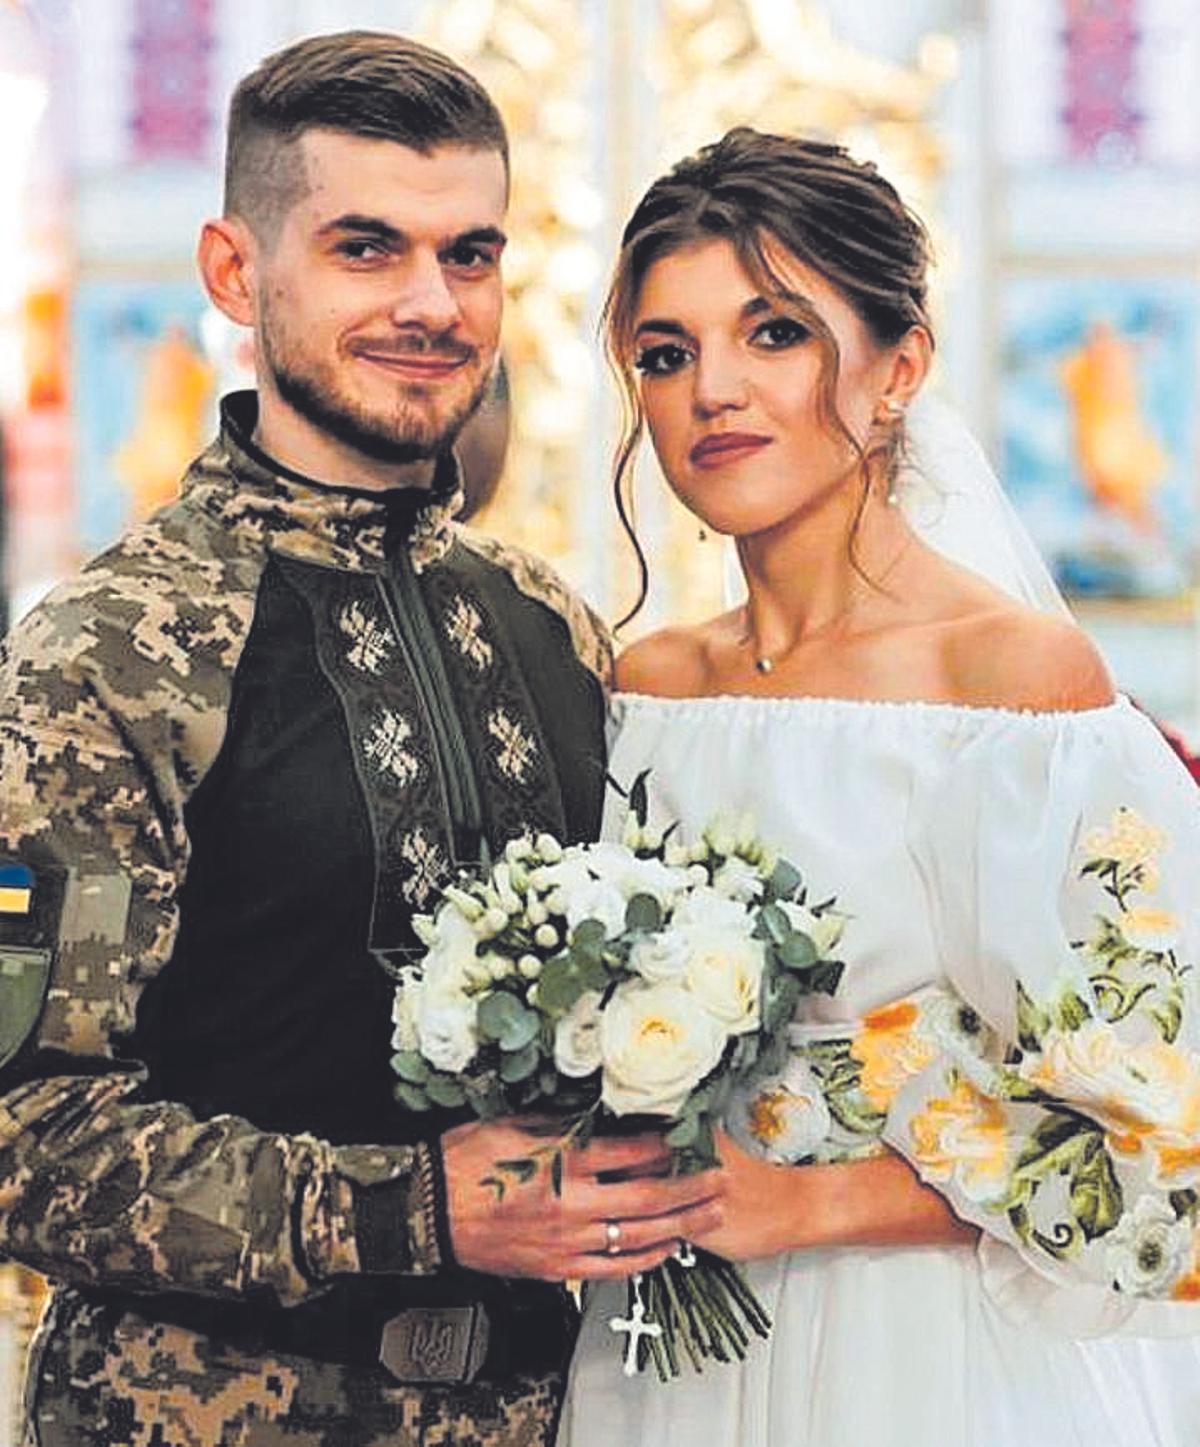 Una pareja feliz  Roman y Olha, el día de su boda en Ucrania en noviembre pasado.